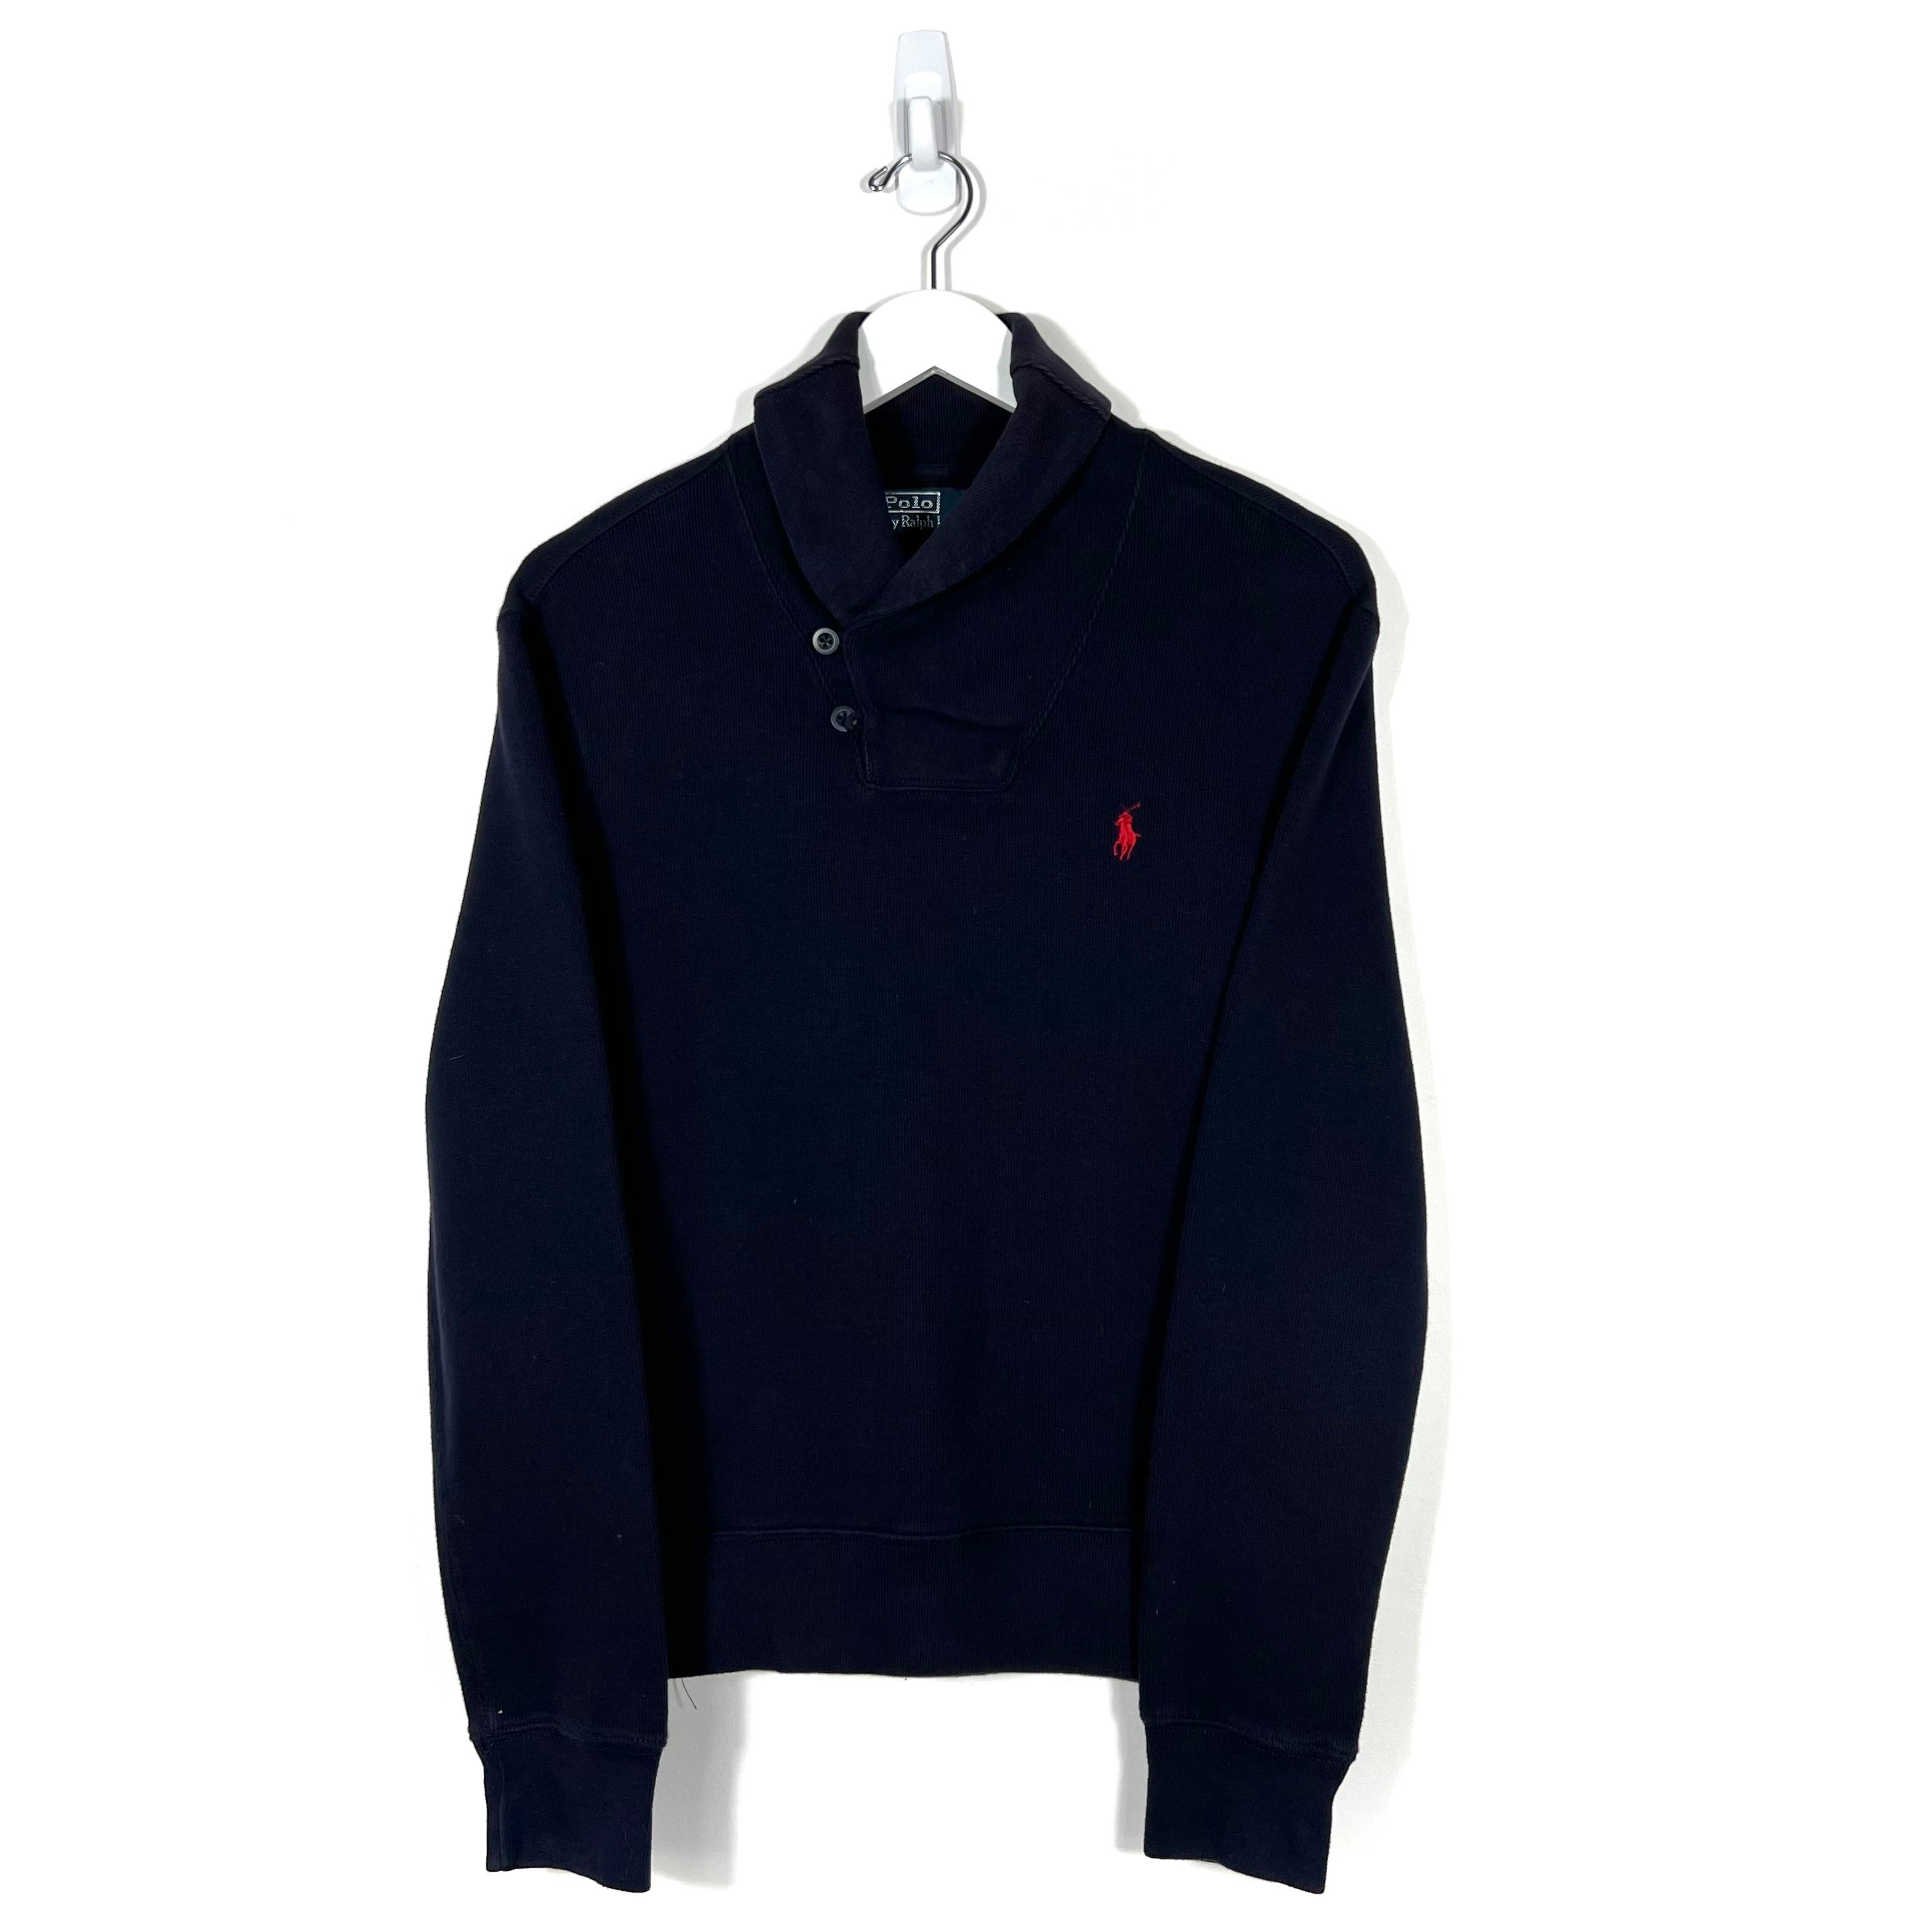 Vintage Polo Ralph Lauren Sweatshirt - Men's Small